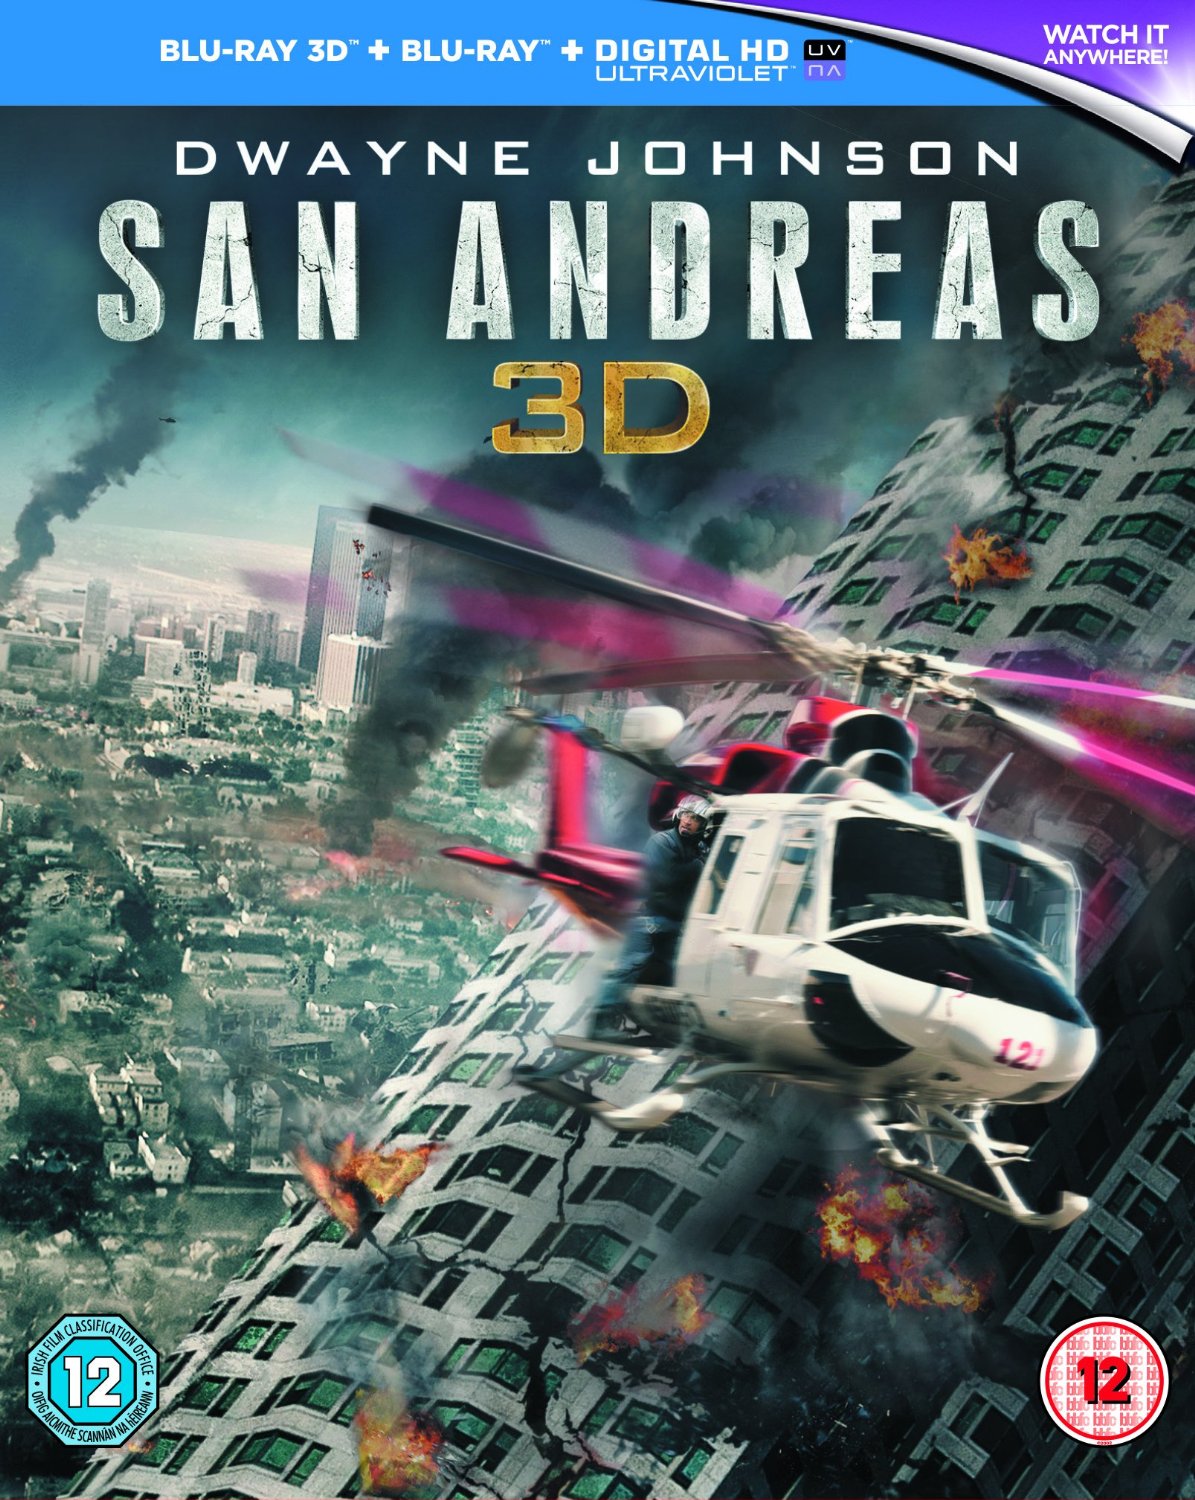 San Andreas 3d Hi Def Ninja Blu Ray Steelbooks Pop Culture Movie News